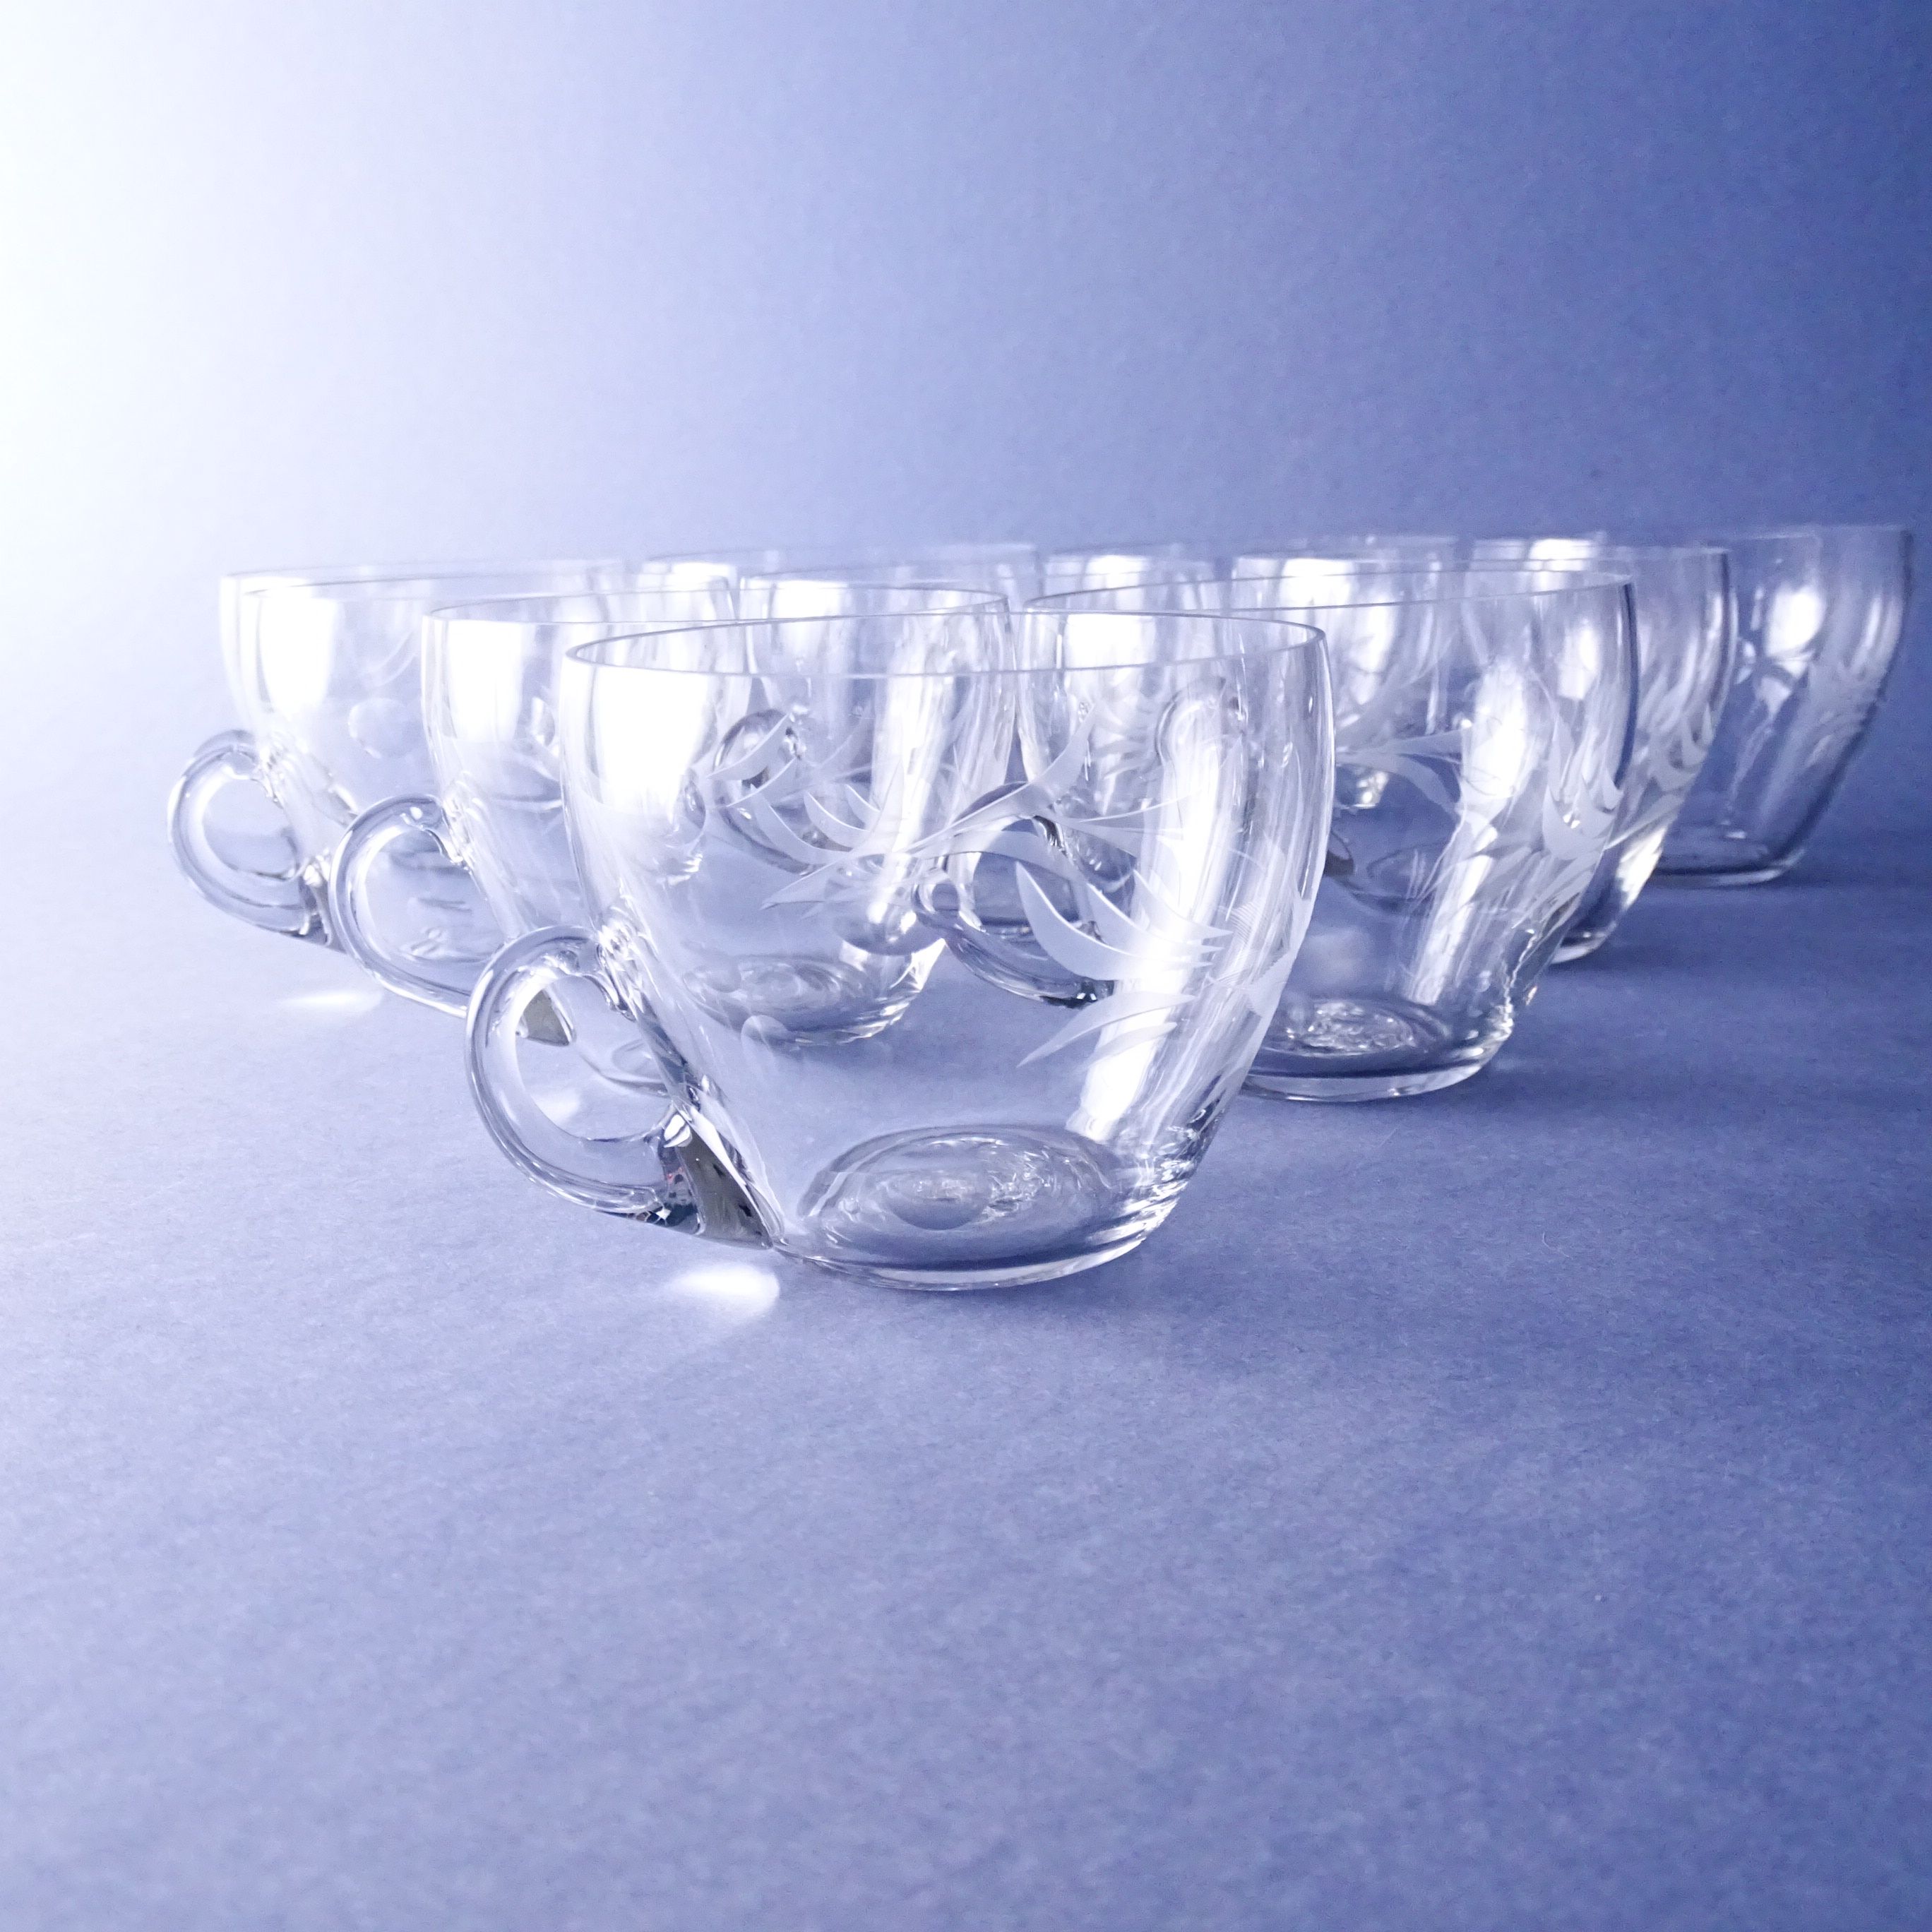 piękne zabytykowe ręcznie szlifowane szklanki kryształowe